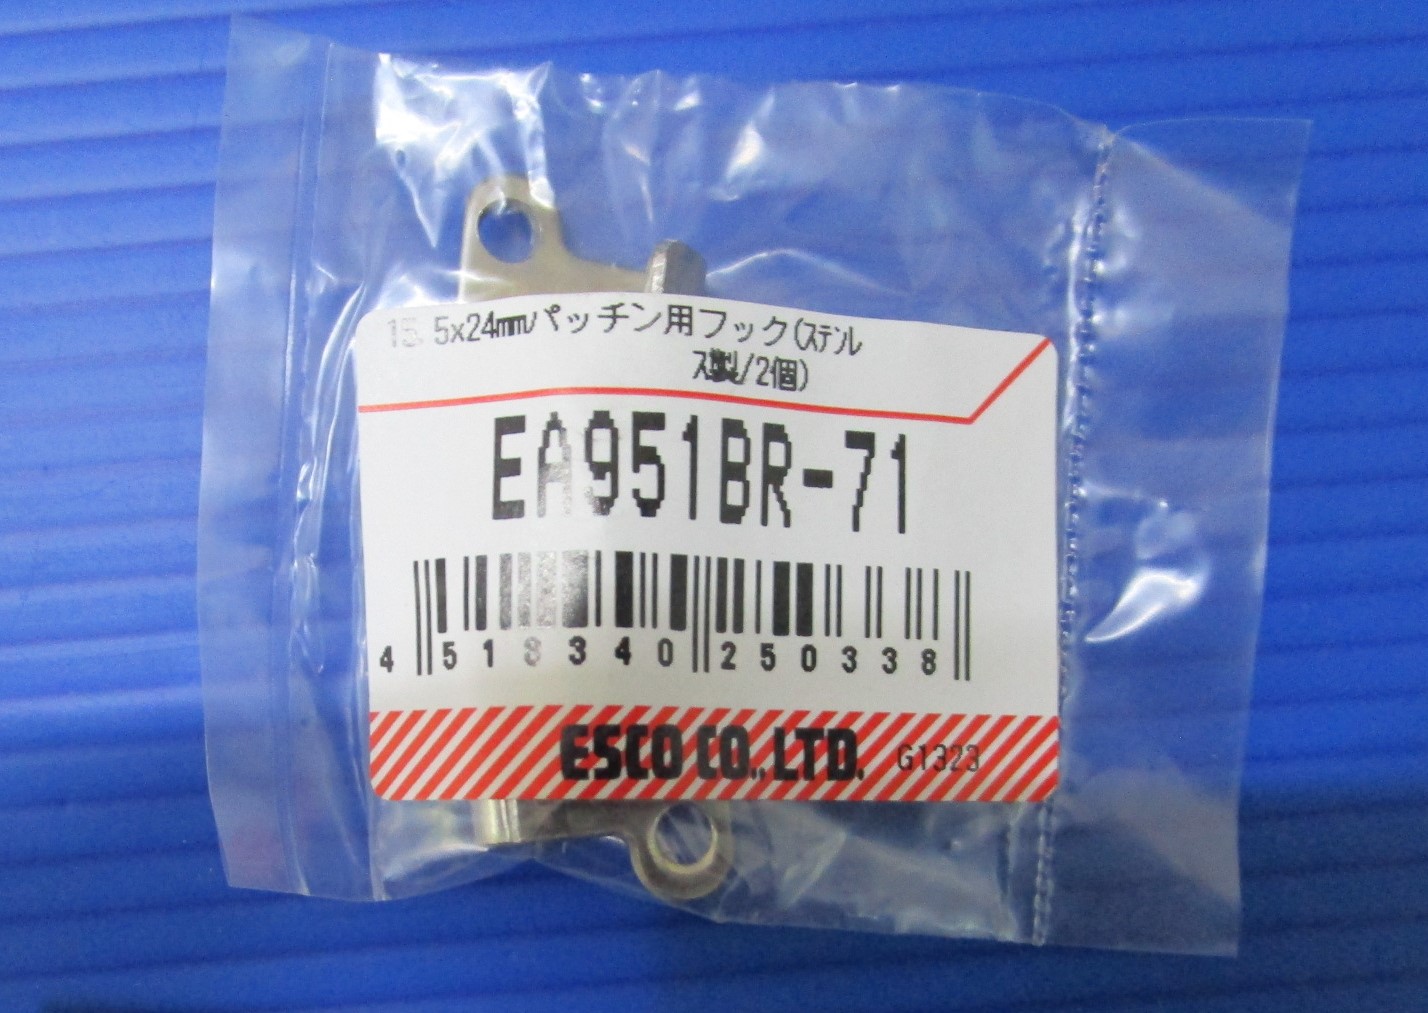 Hook Móc khóa (Bản lề) EA951BR-71